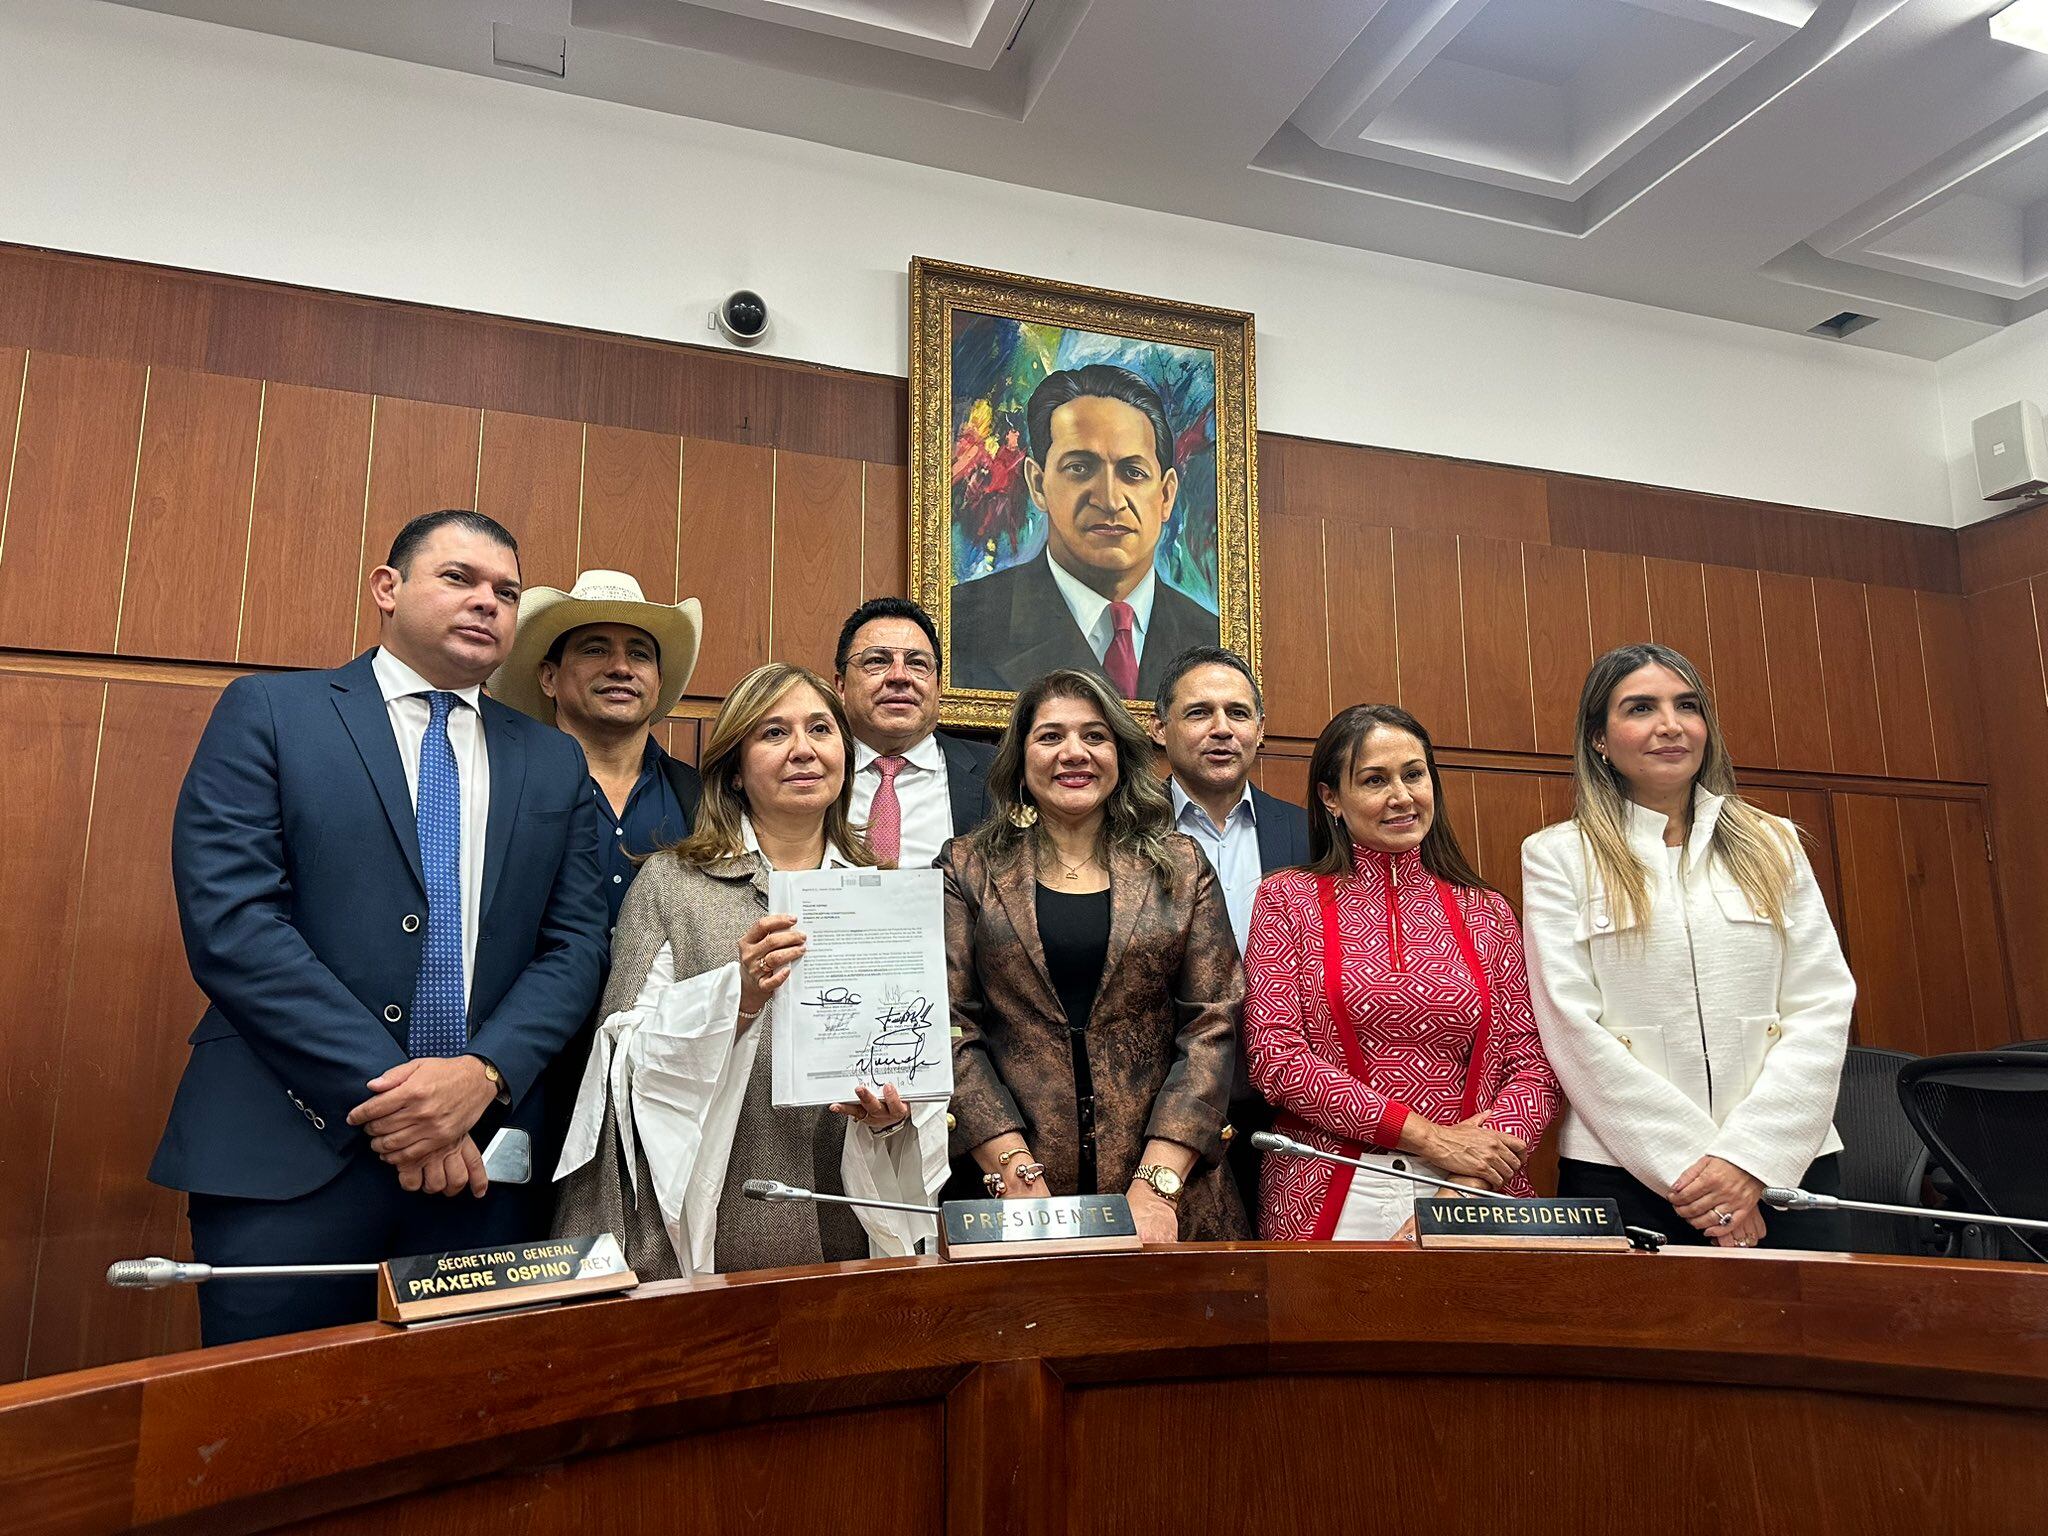 Senators José Alfredo Marín, Alirio Barrera, Norma Hurtados, Miguel Pinto Hernández, Lorena Ríos Cuéllar, Honorio Enríquez, Berenica Bedoya and Nadia Blel Scaff on March 12.